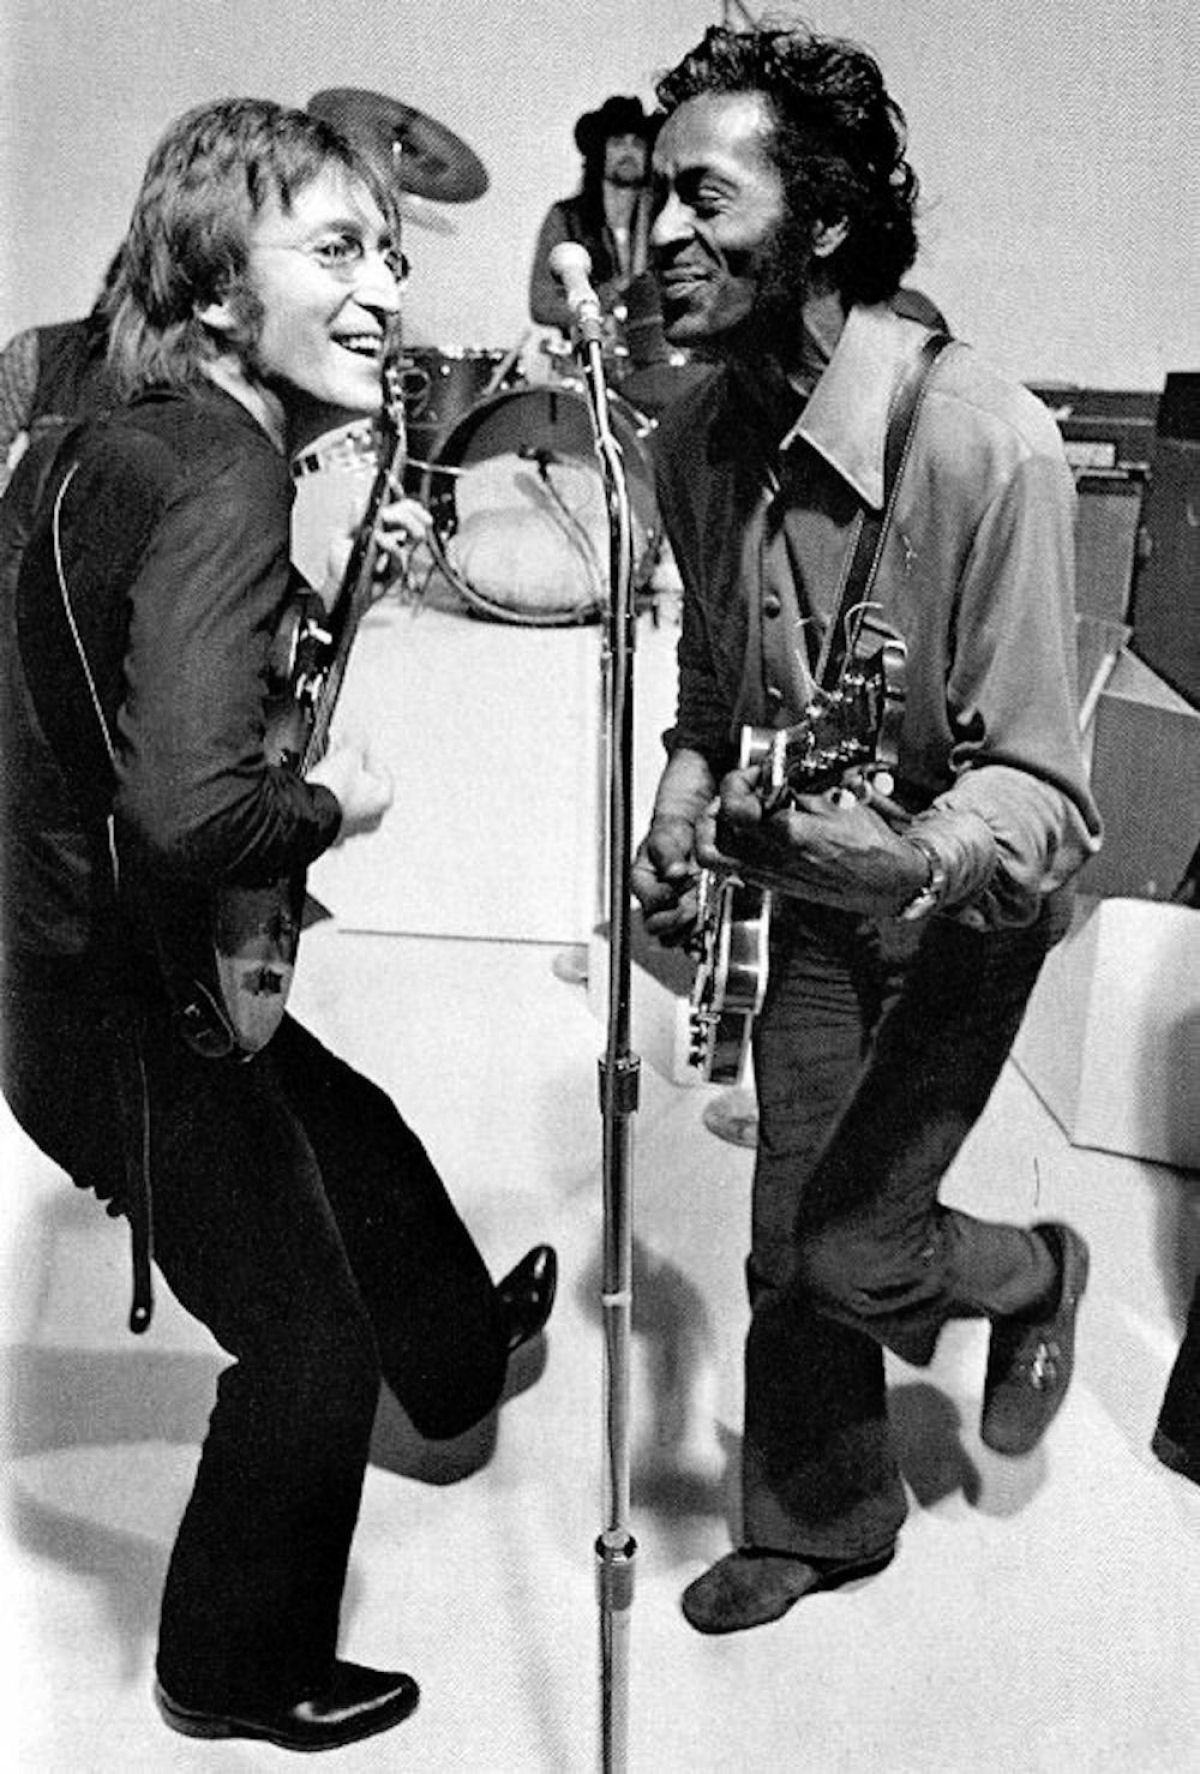 H trs lendas neste vdeo: Chuck Berry, John Lennon e o cara que desligou o microfone da Yoko 05